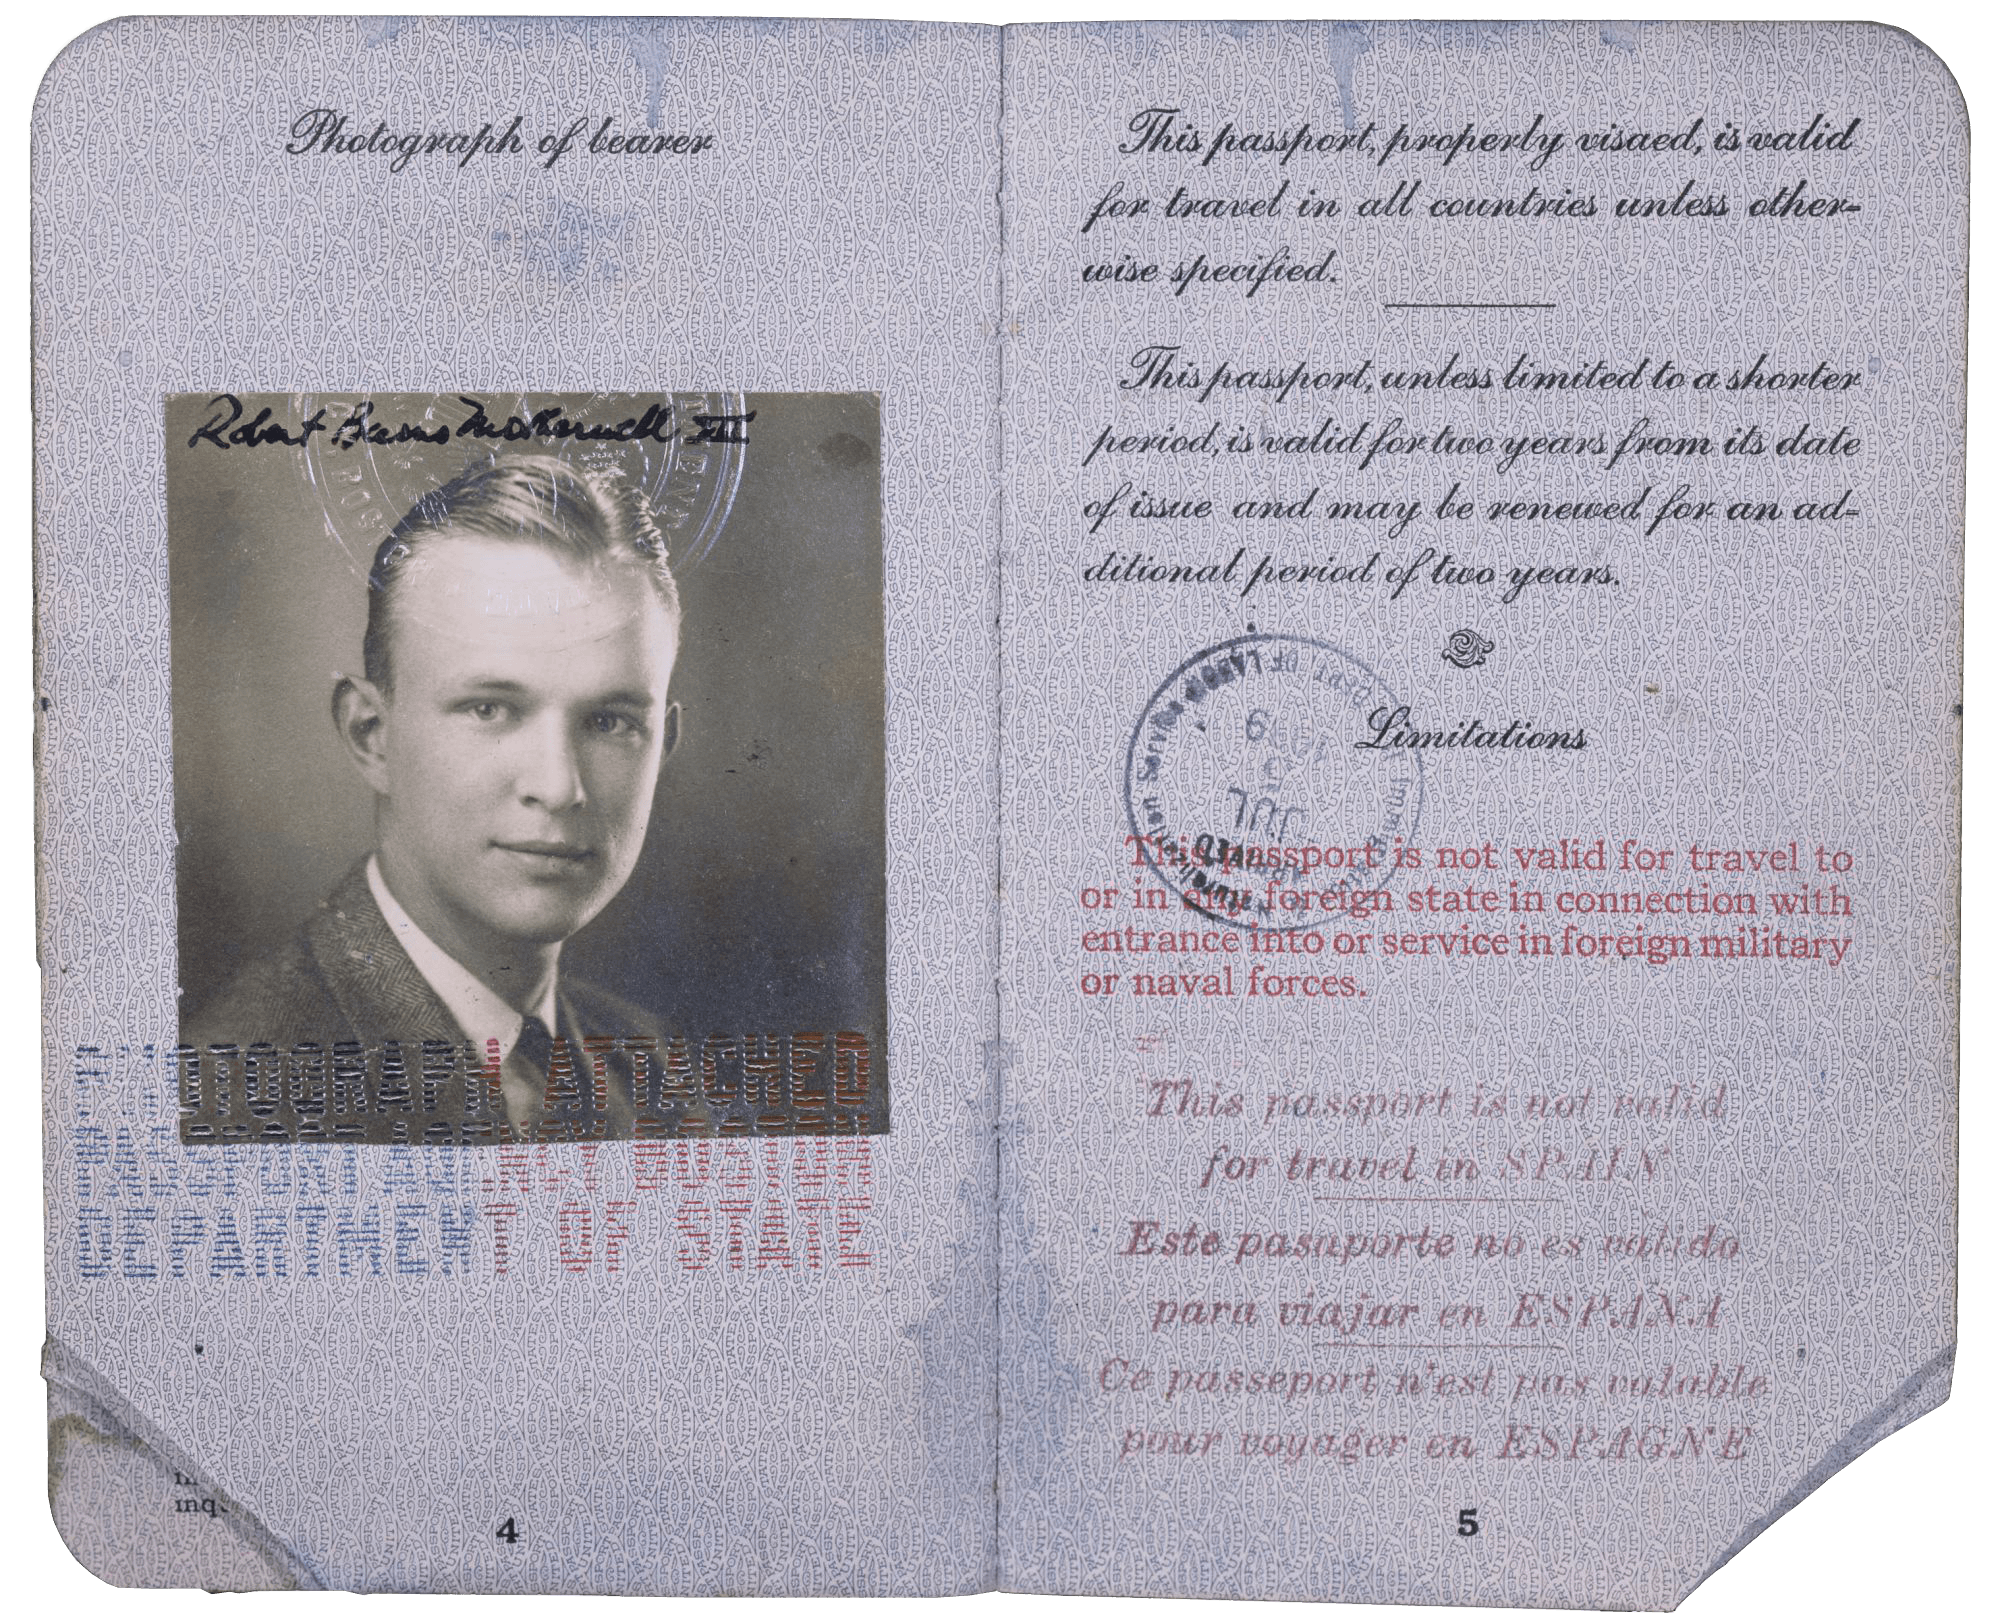 Motherwell’s passport, 1938